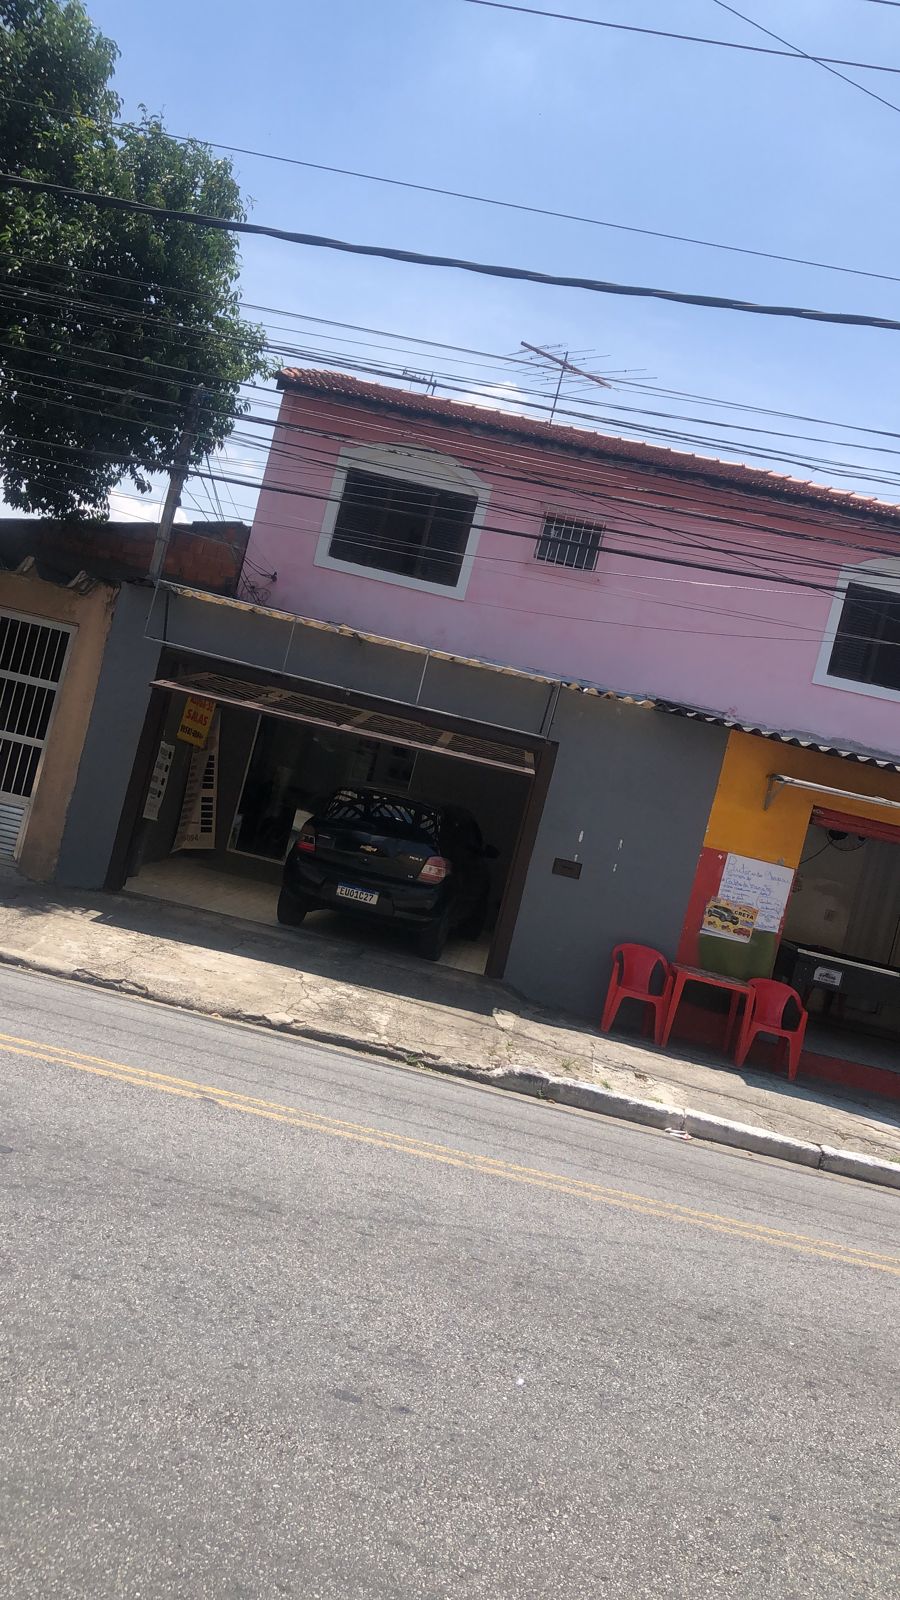 Salão - Locação, Assunção, São Bernardo do Campo, SP